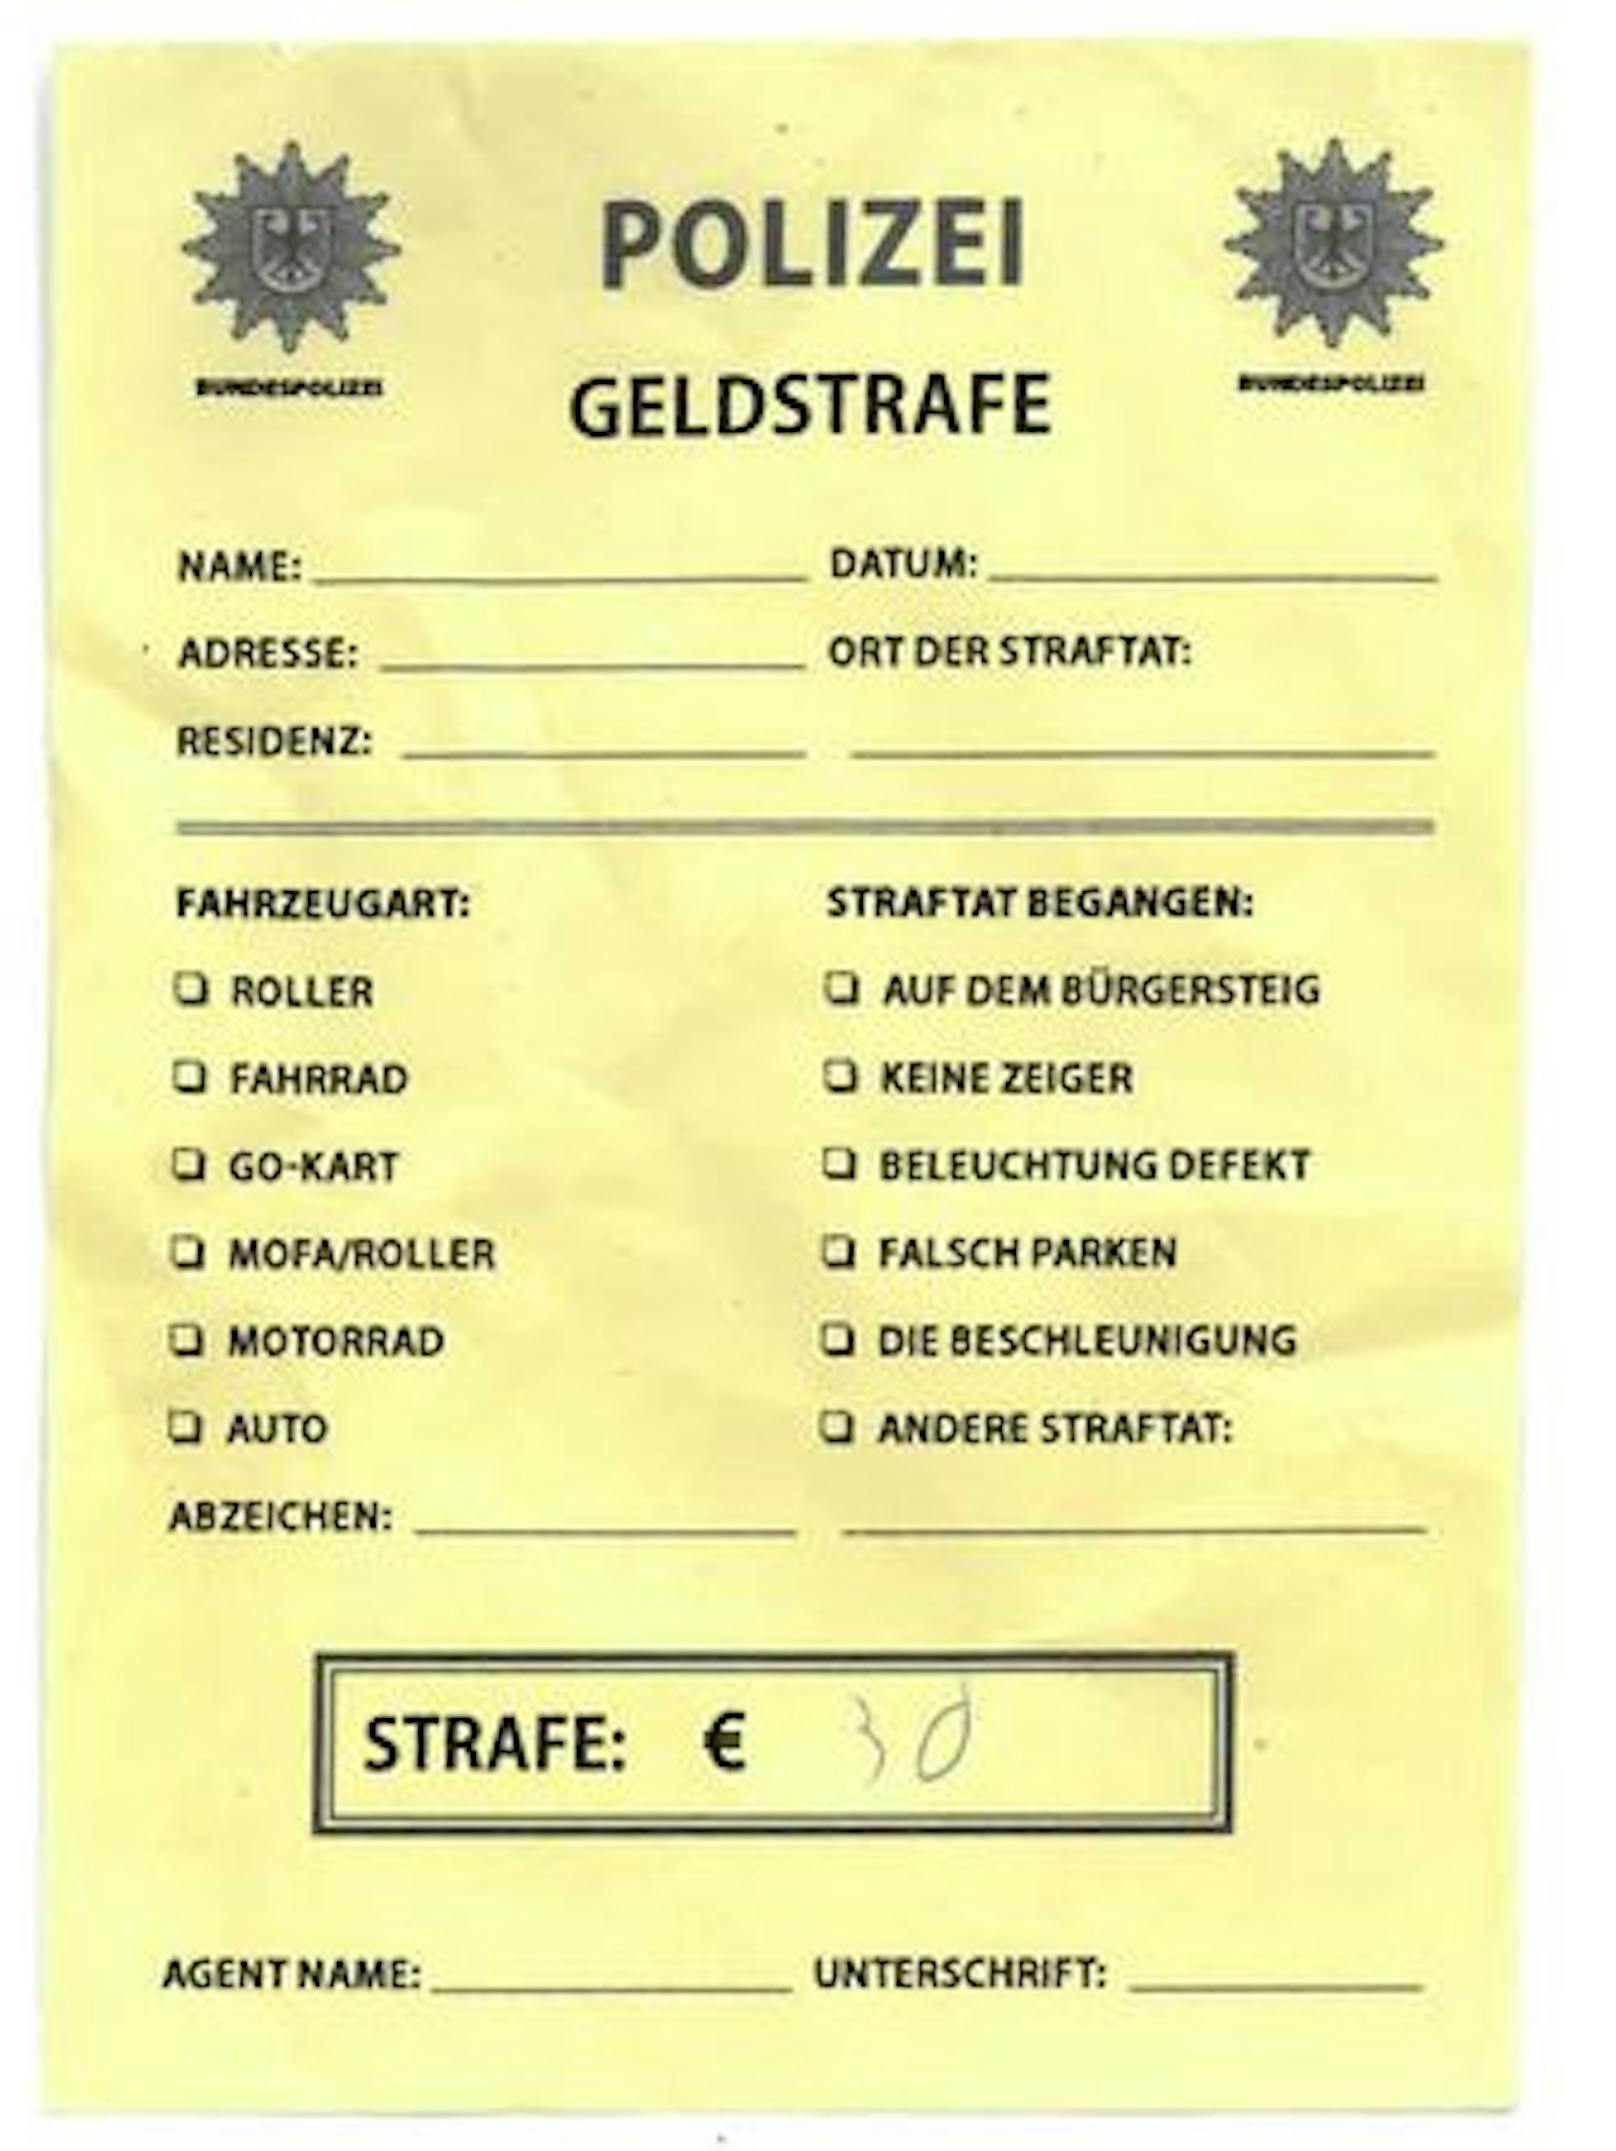 Am 10. August fand ein Österreicher an seinem Kfz in München diesen "Strafzettel der Bundespolizei" vor